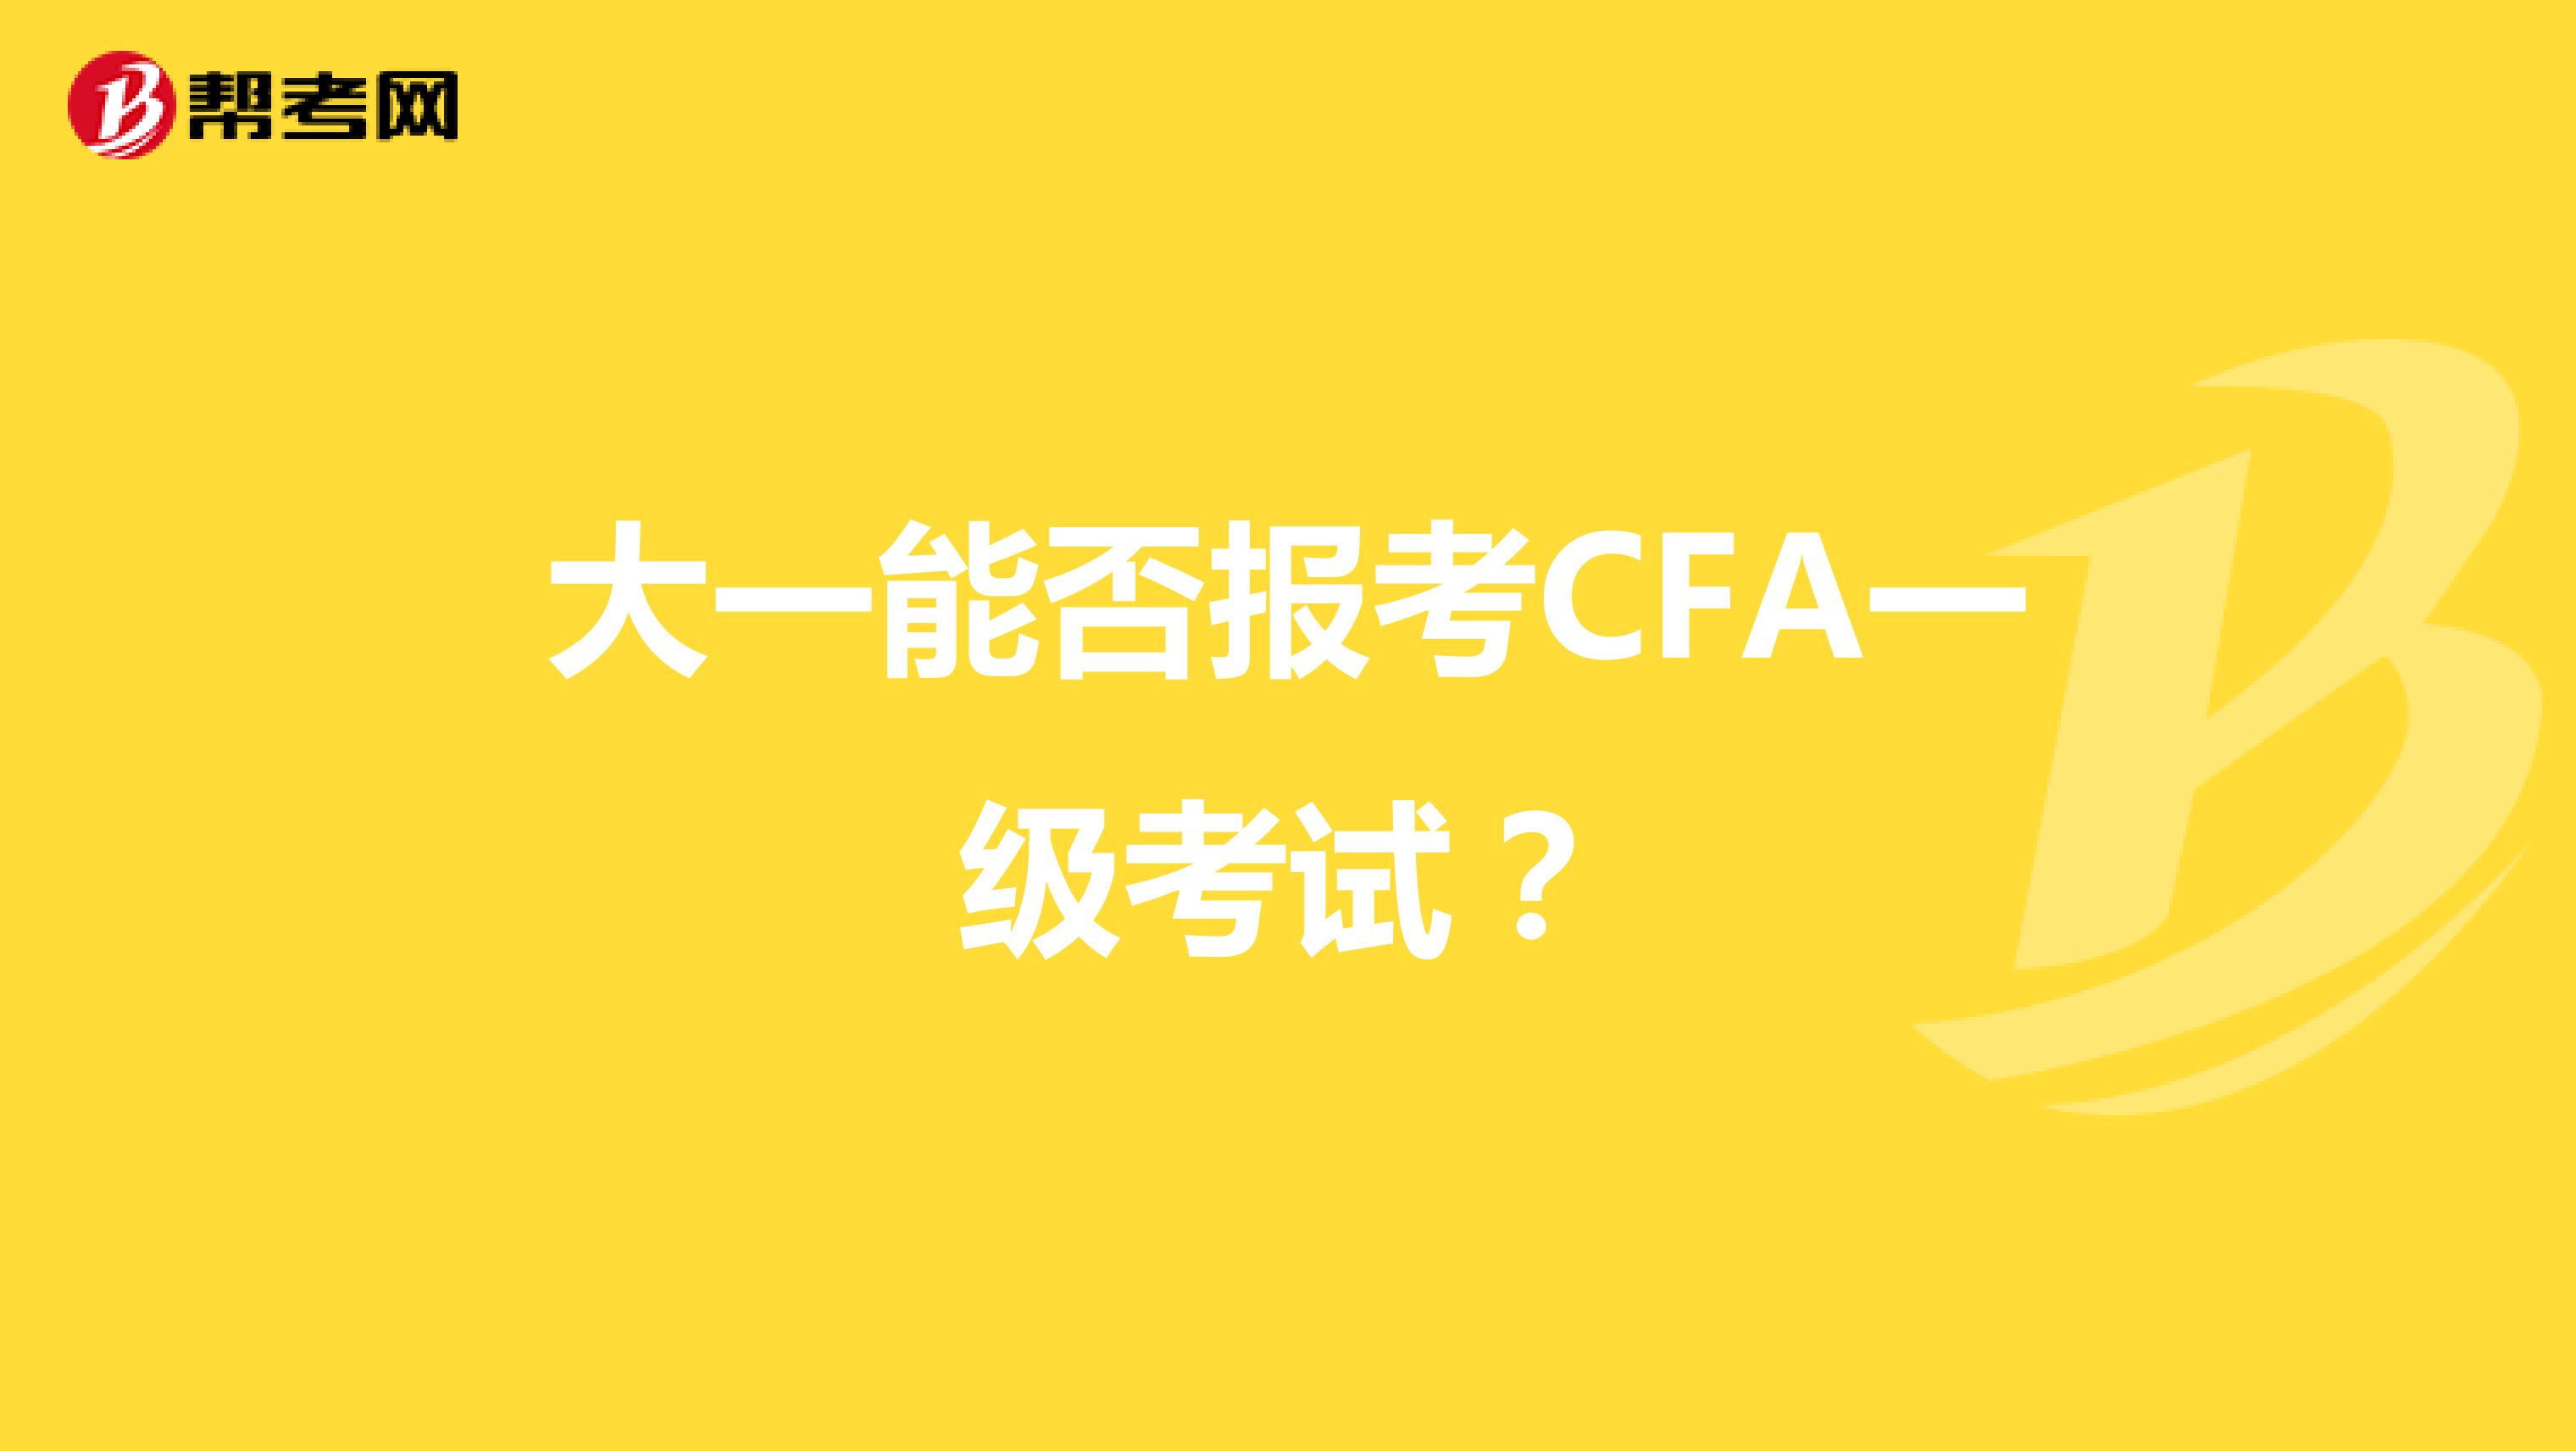 大一能否报考CFA一级考试？